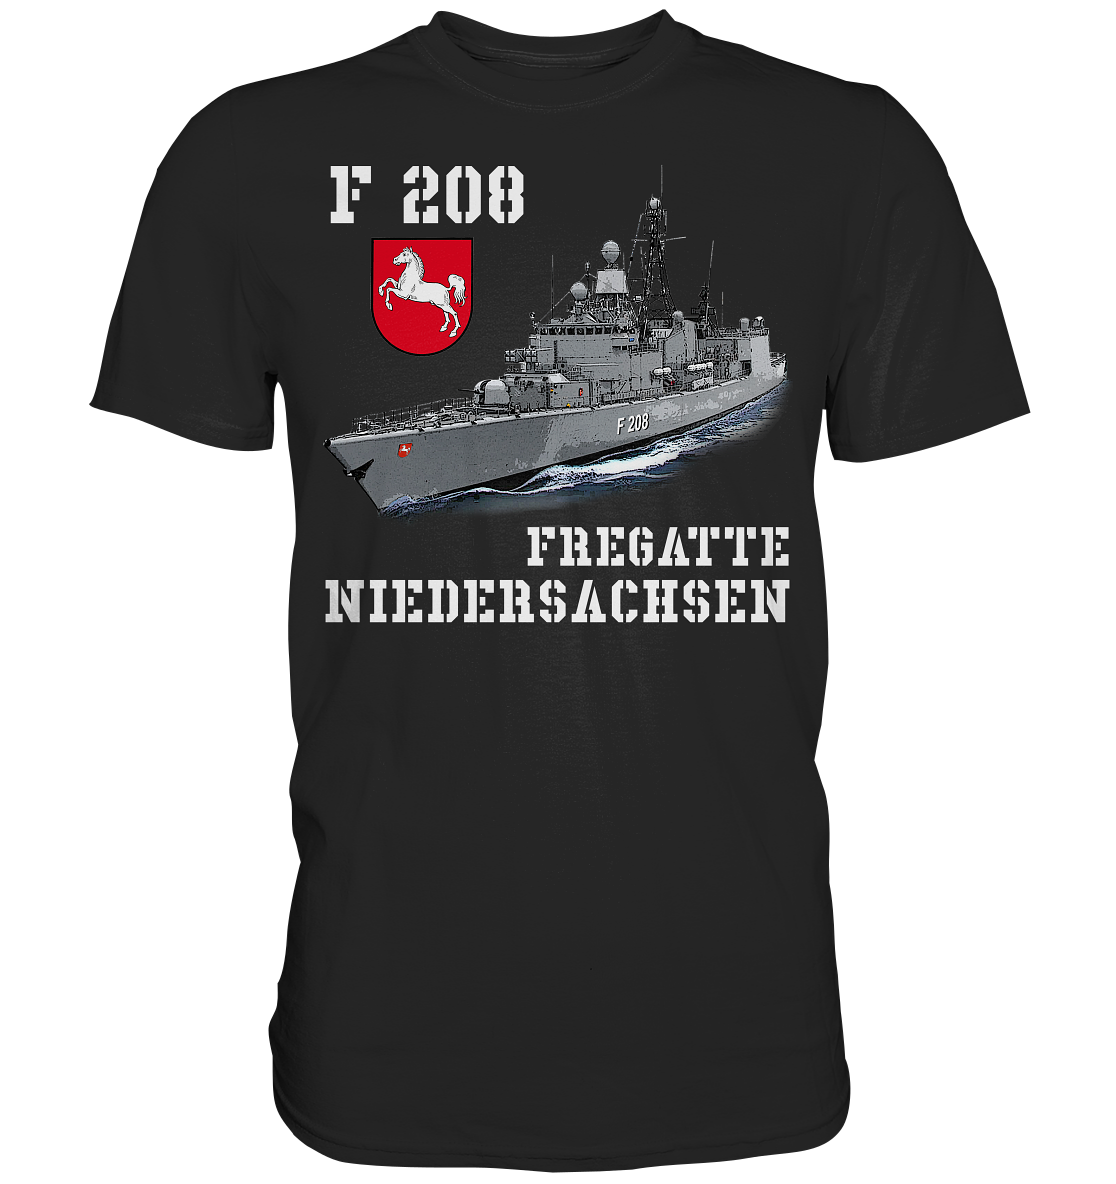 F208 Fregatte NIEDERSACHSEN - Premium Shirt